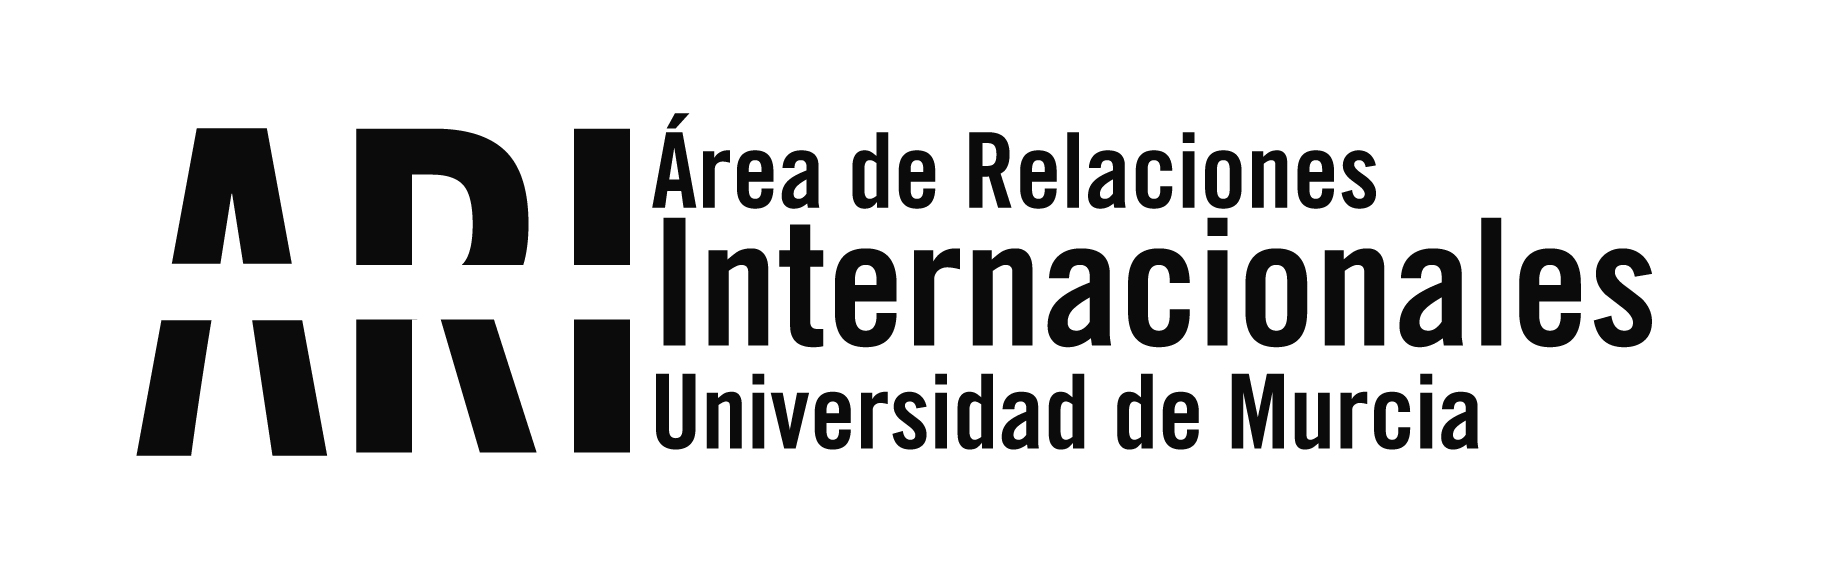 La UMU da la bienvenida a sus nuevos estudiantes internacionales - Área de Relaciones Internacionales